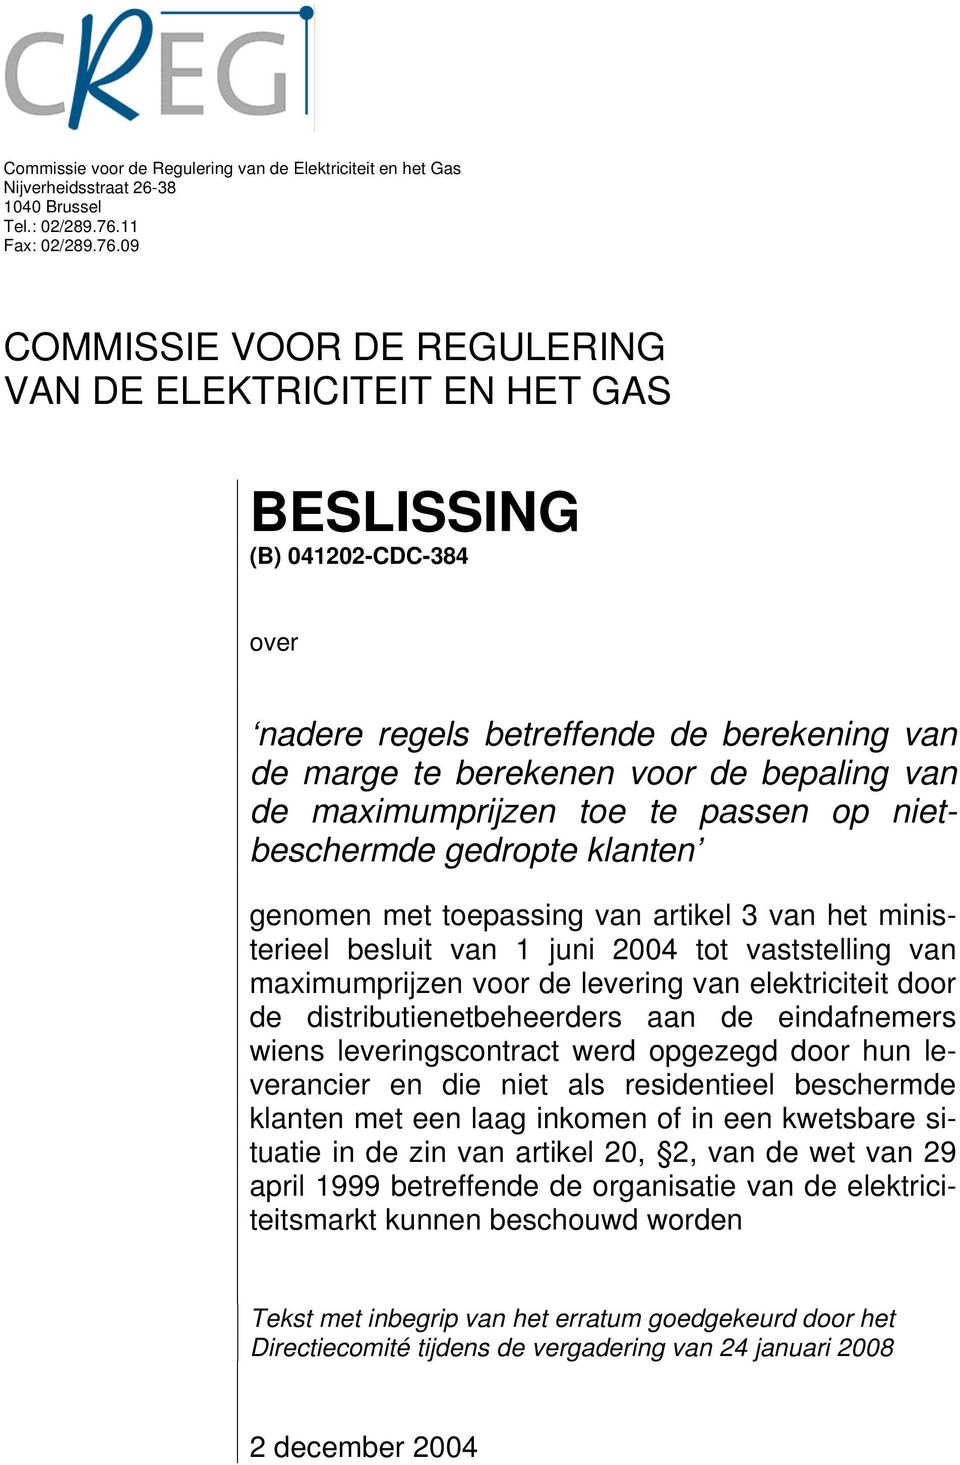 09 COMMISSIE VOOR DE REGULERING VAN DE ELEKTRICITEIT EN HET GAS BESLISSING (B) 041202-CDC-384 over nadere regels betreffende de berekening van de marge te berekenen voor de bepaling van de